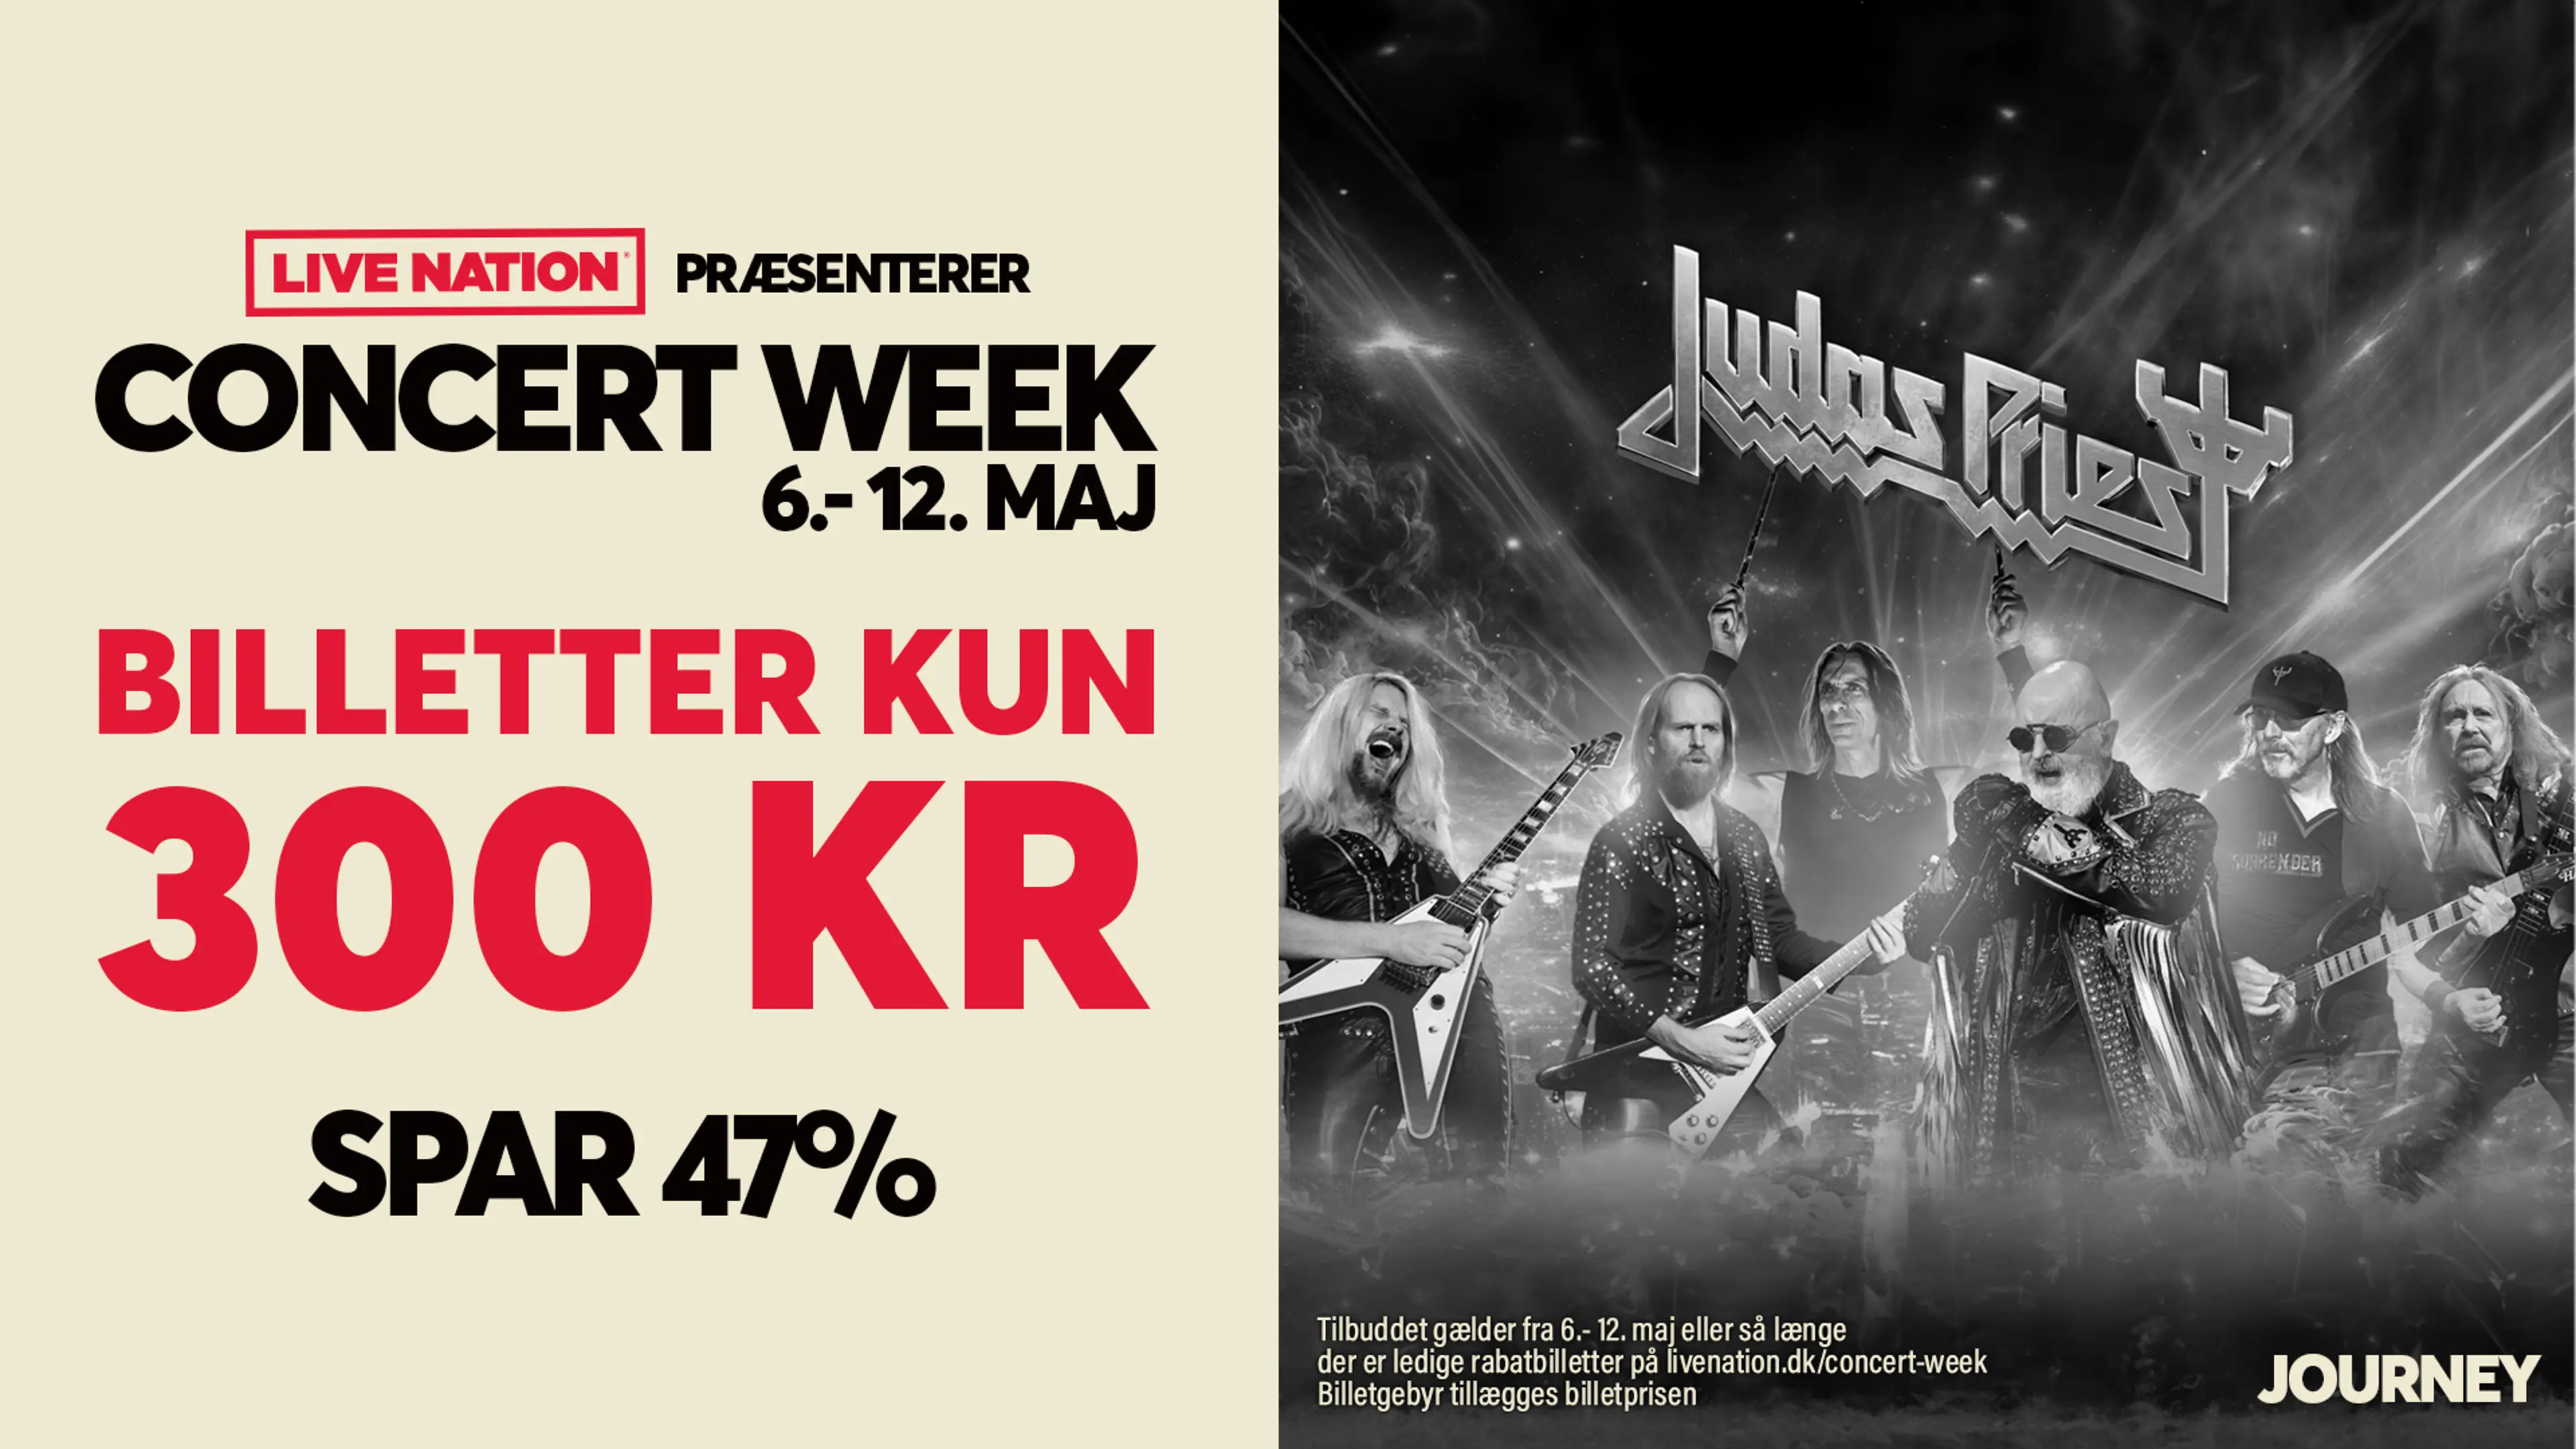 Judas Priest: 26. juni i Royal Arena